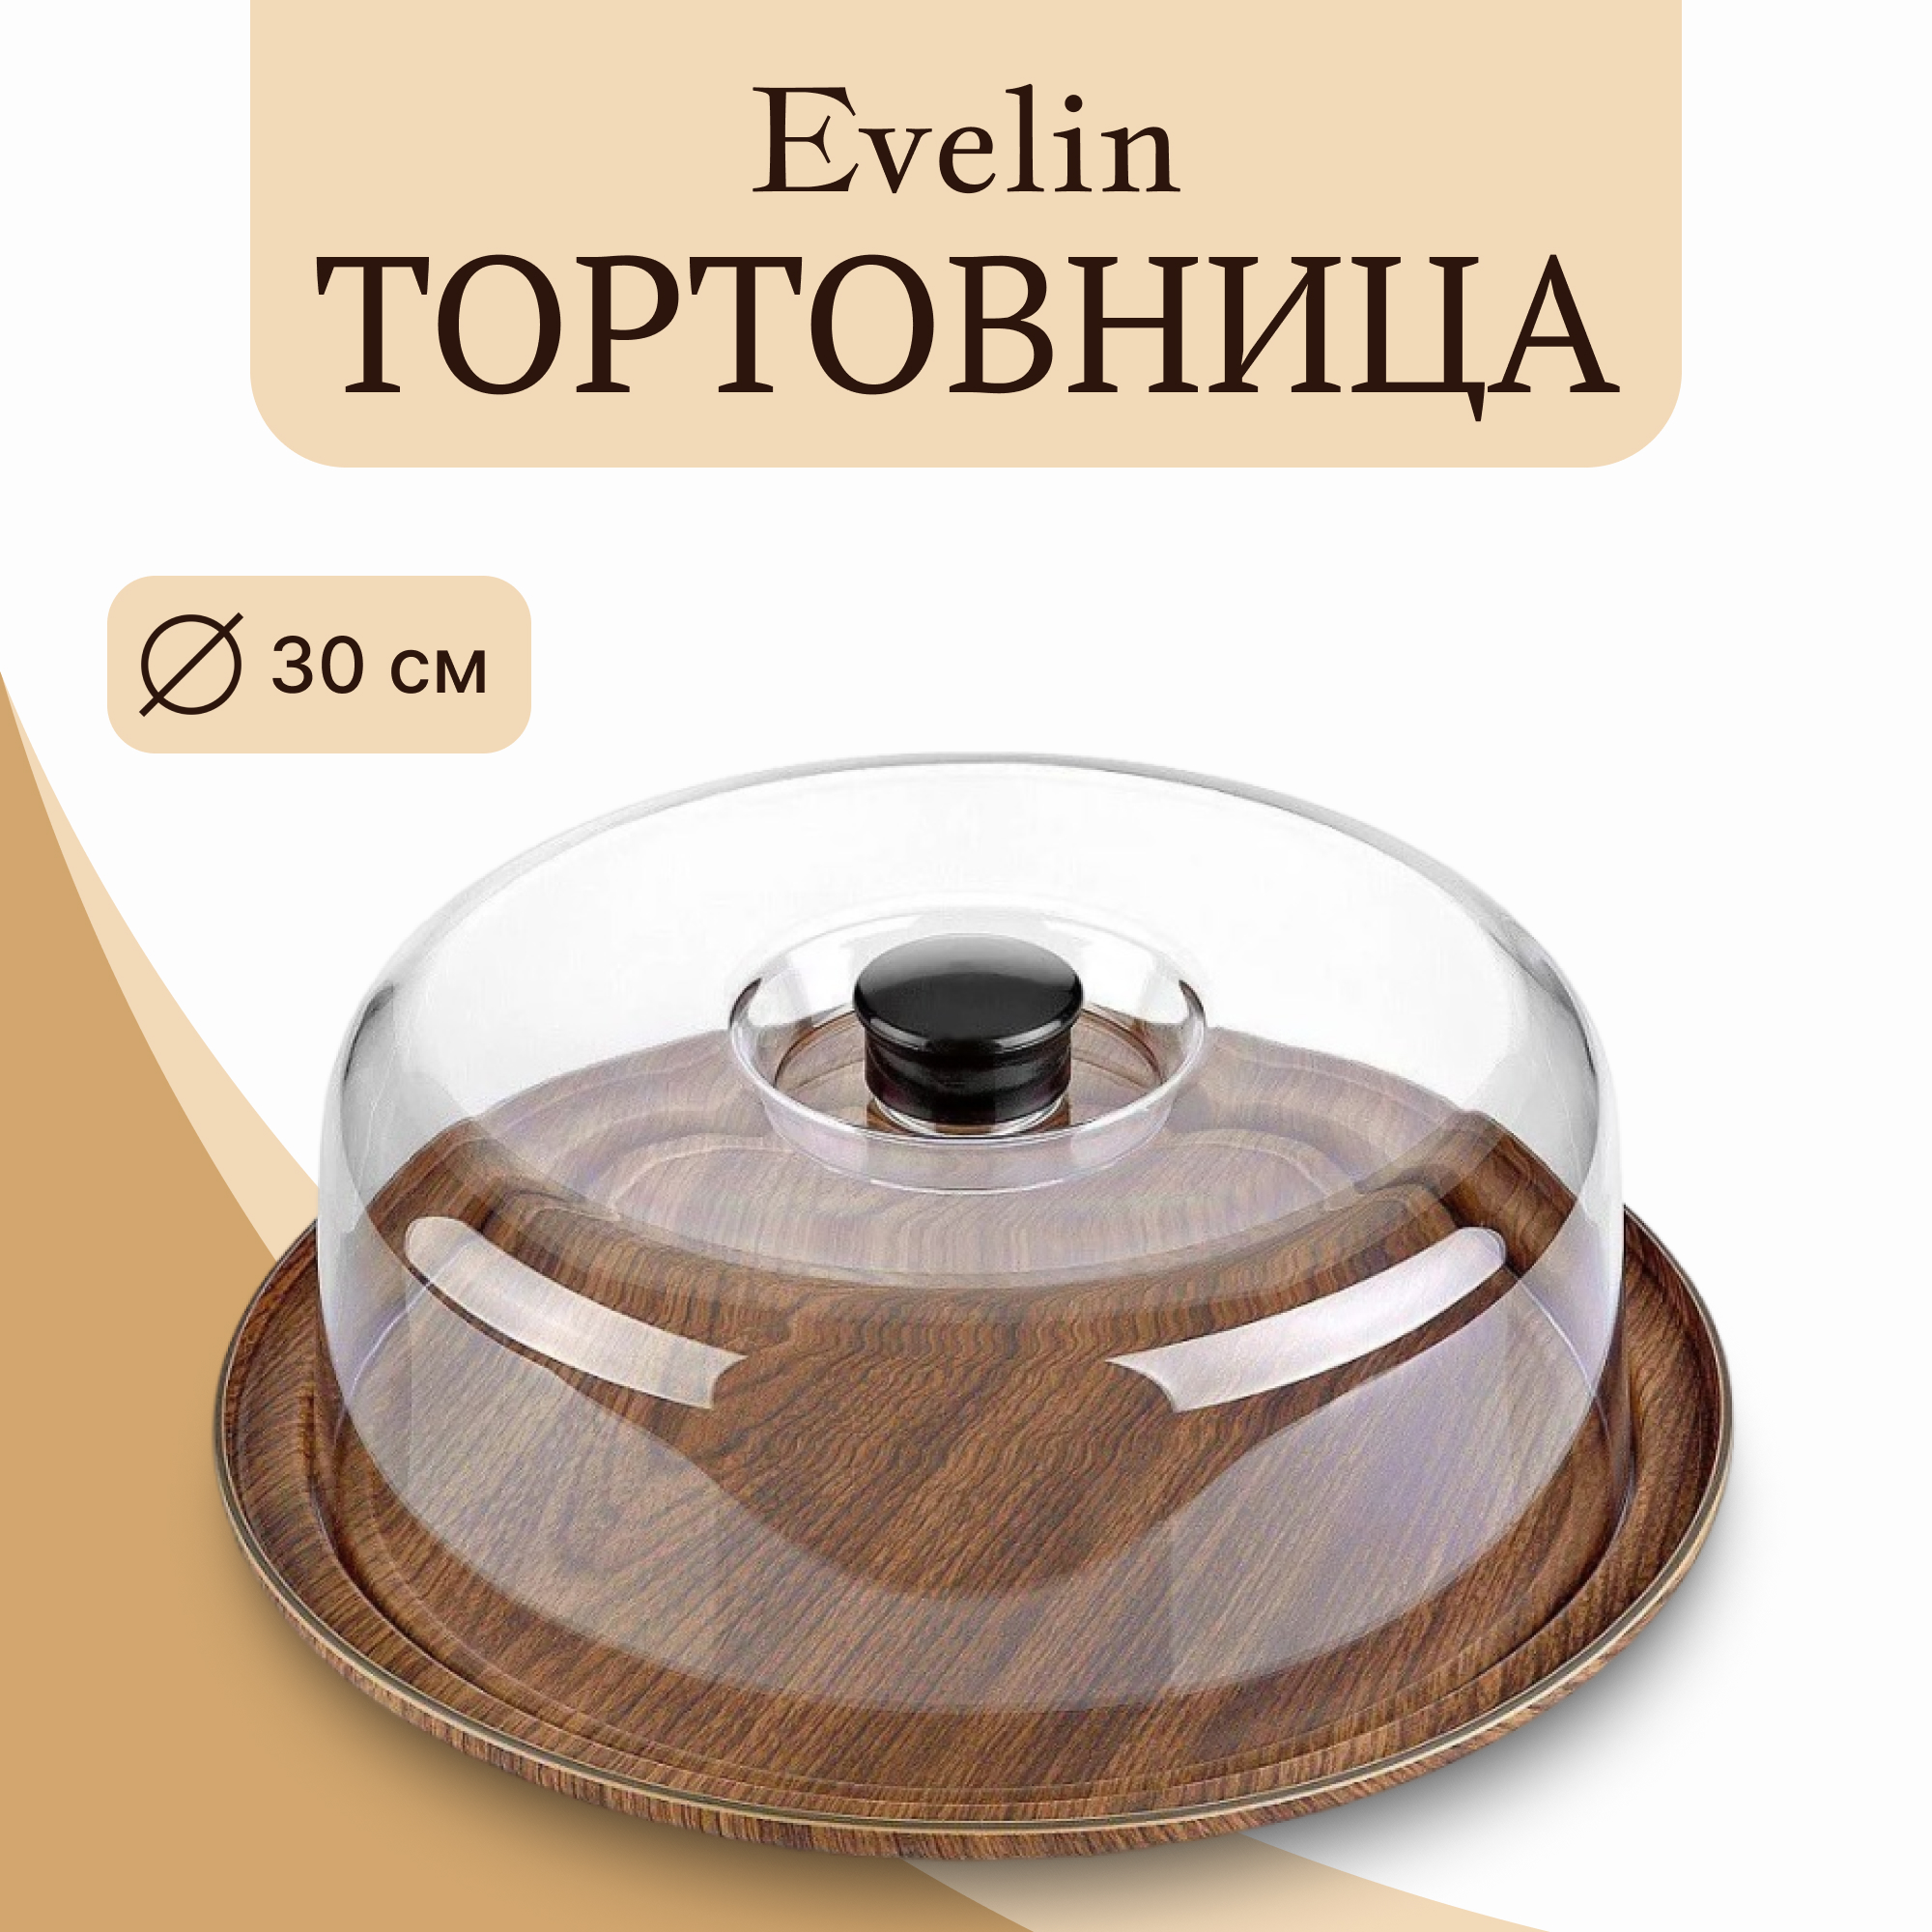 Тортовница Evelin с крышкой 30 см, цвет коричневый - фото 2